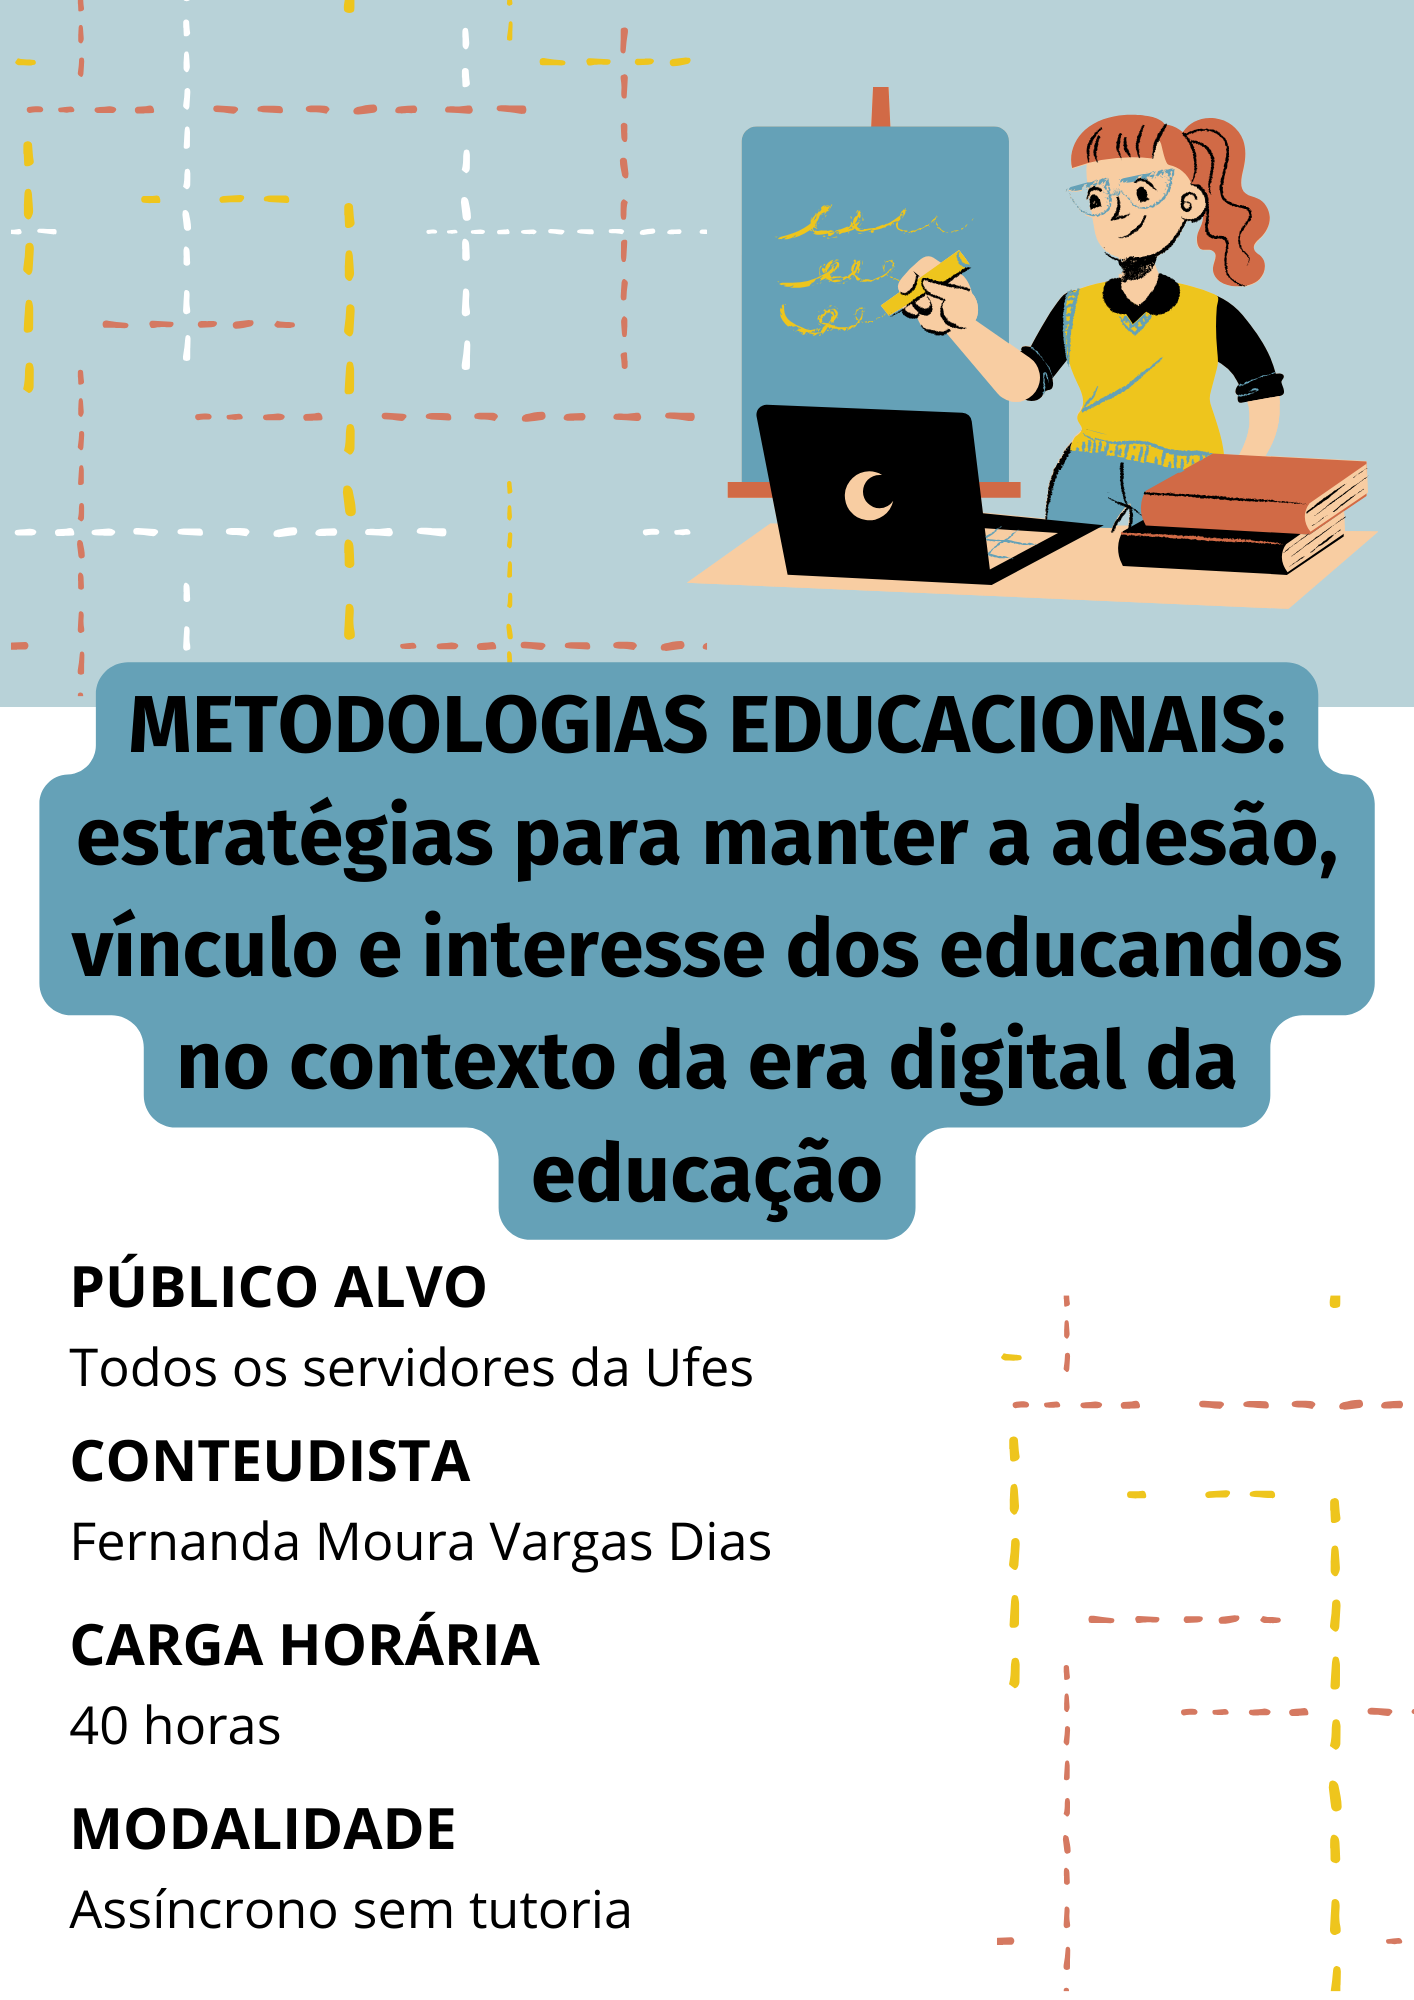 Metodologias educacionais: estratégias para manter a adesão, vínculo e interesse dos educandos no contexto da era digital da educação